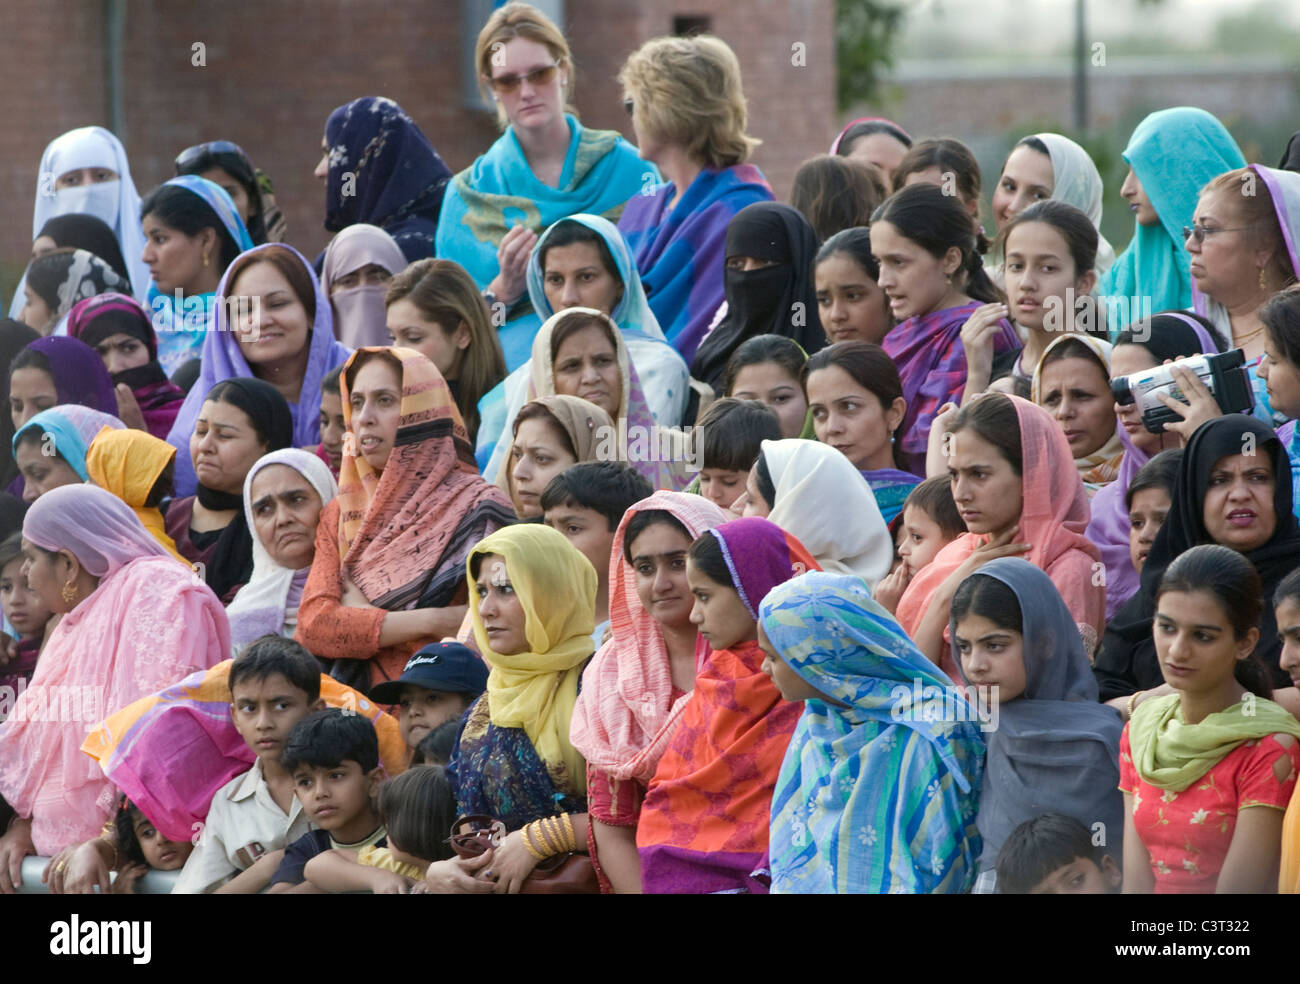 Les femmes se rassemblent dans la section des femmes avant la frontière cérémonie. Banque D'Images